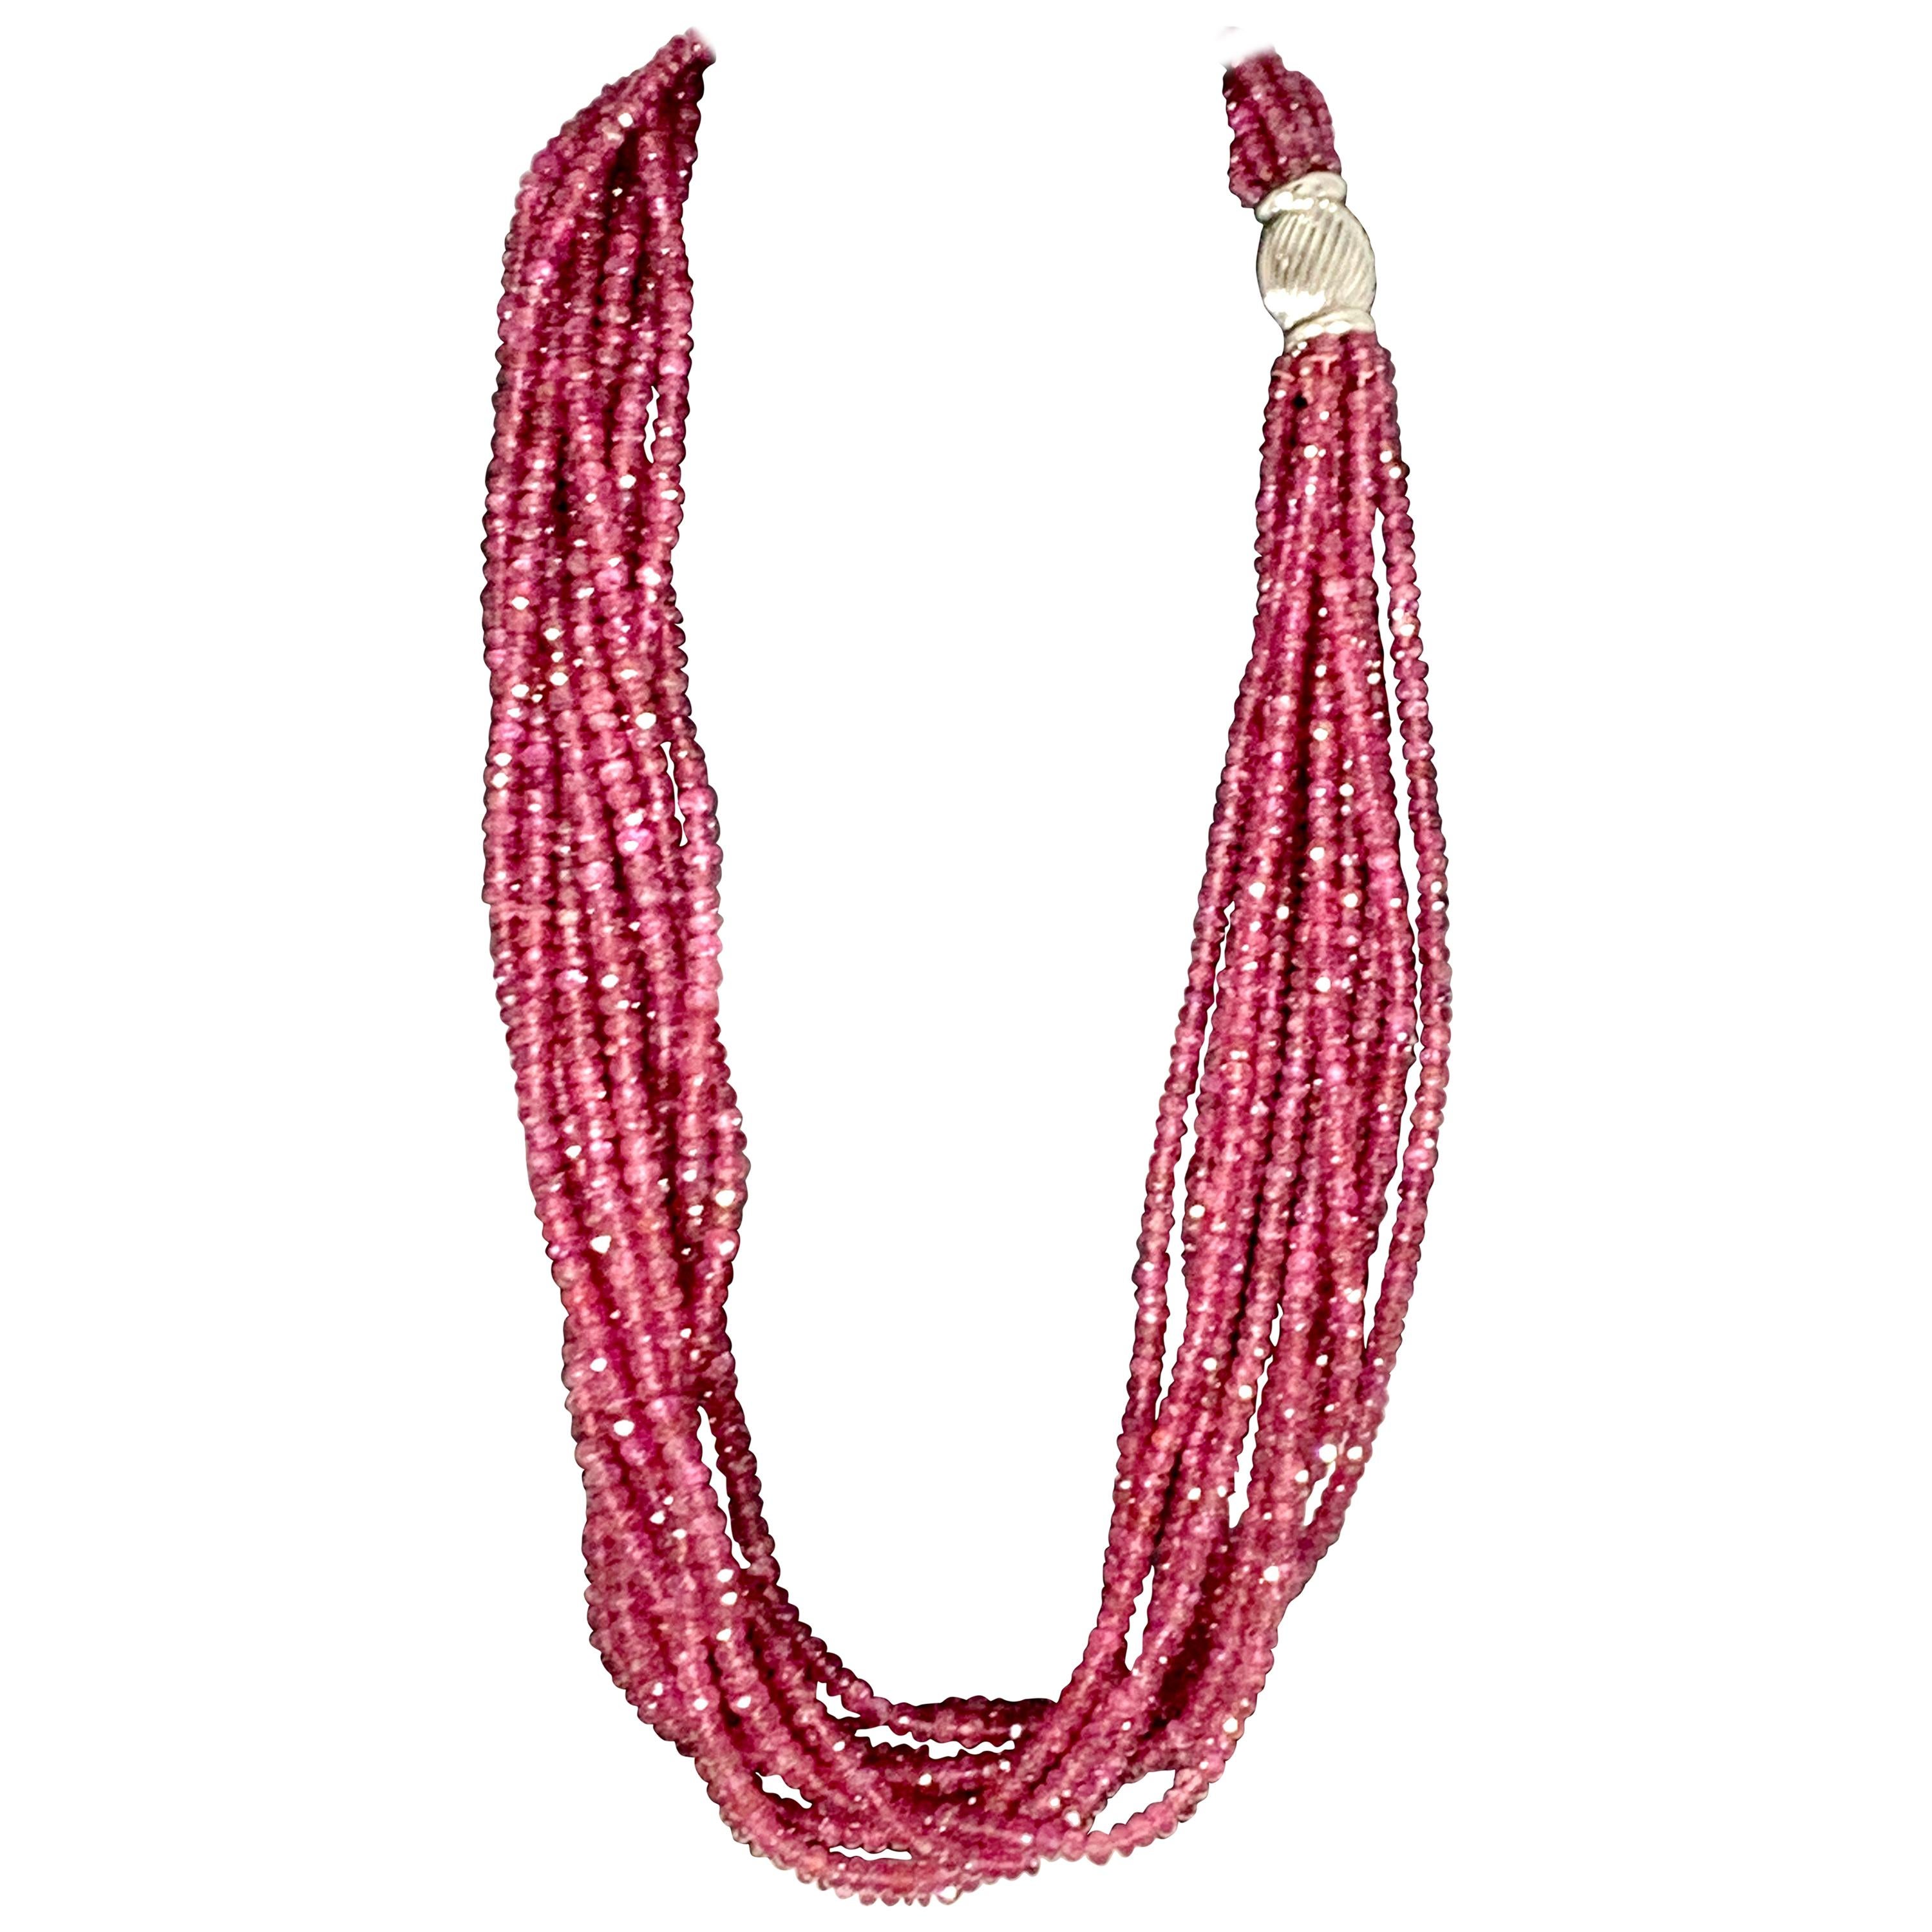 1002 Carat 10 Layer Natural Pink Tourmaline Bead Necklace 18 Karat Gold Clasp